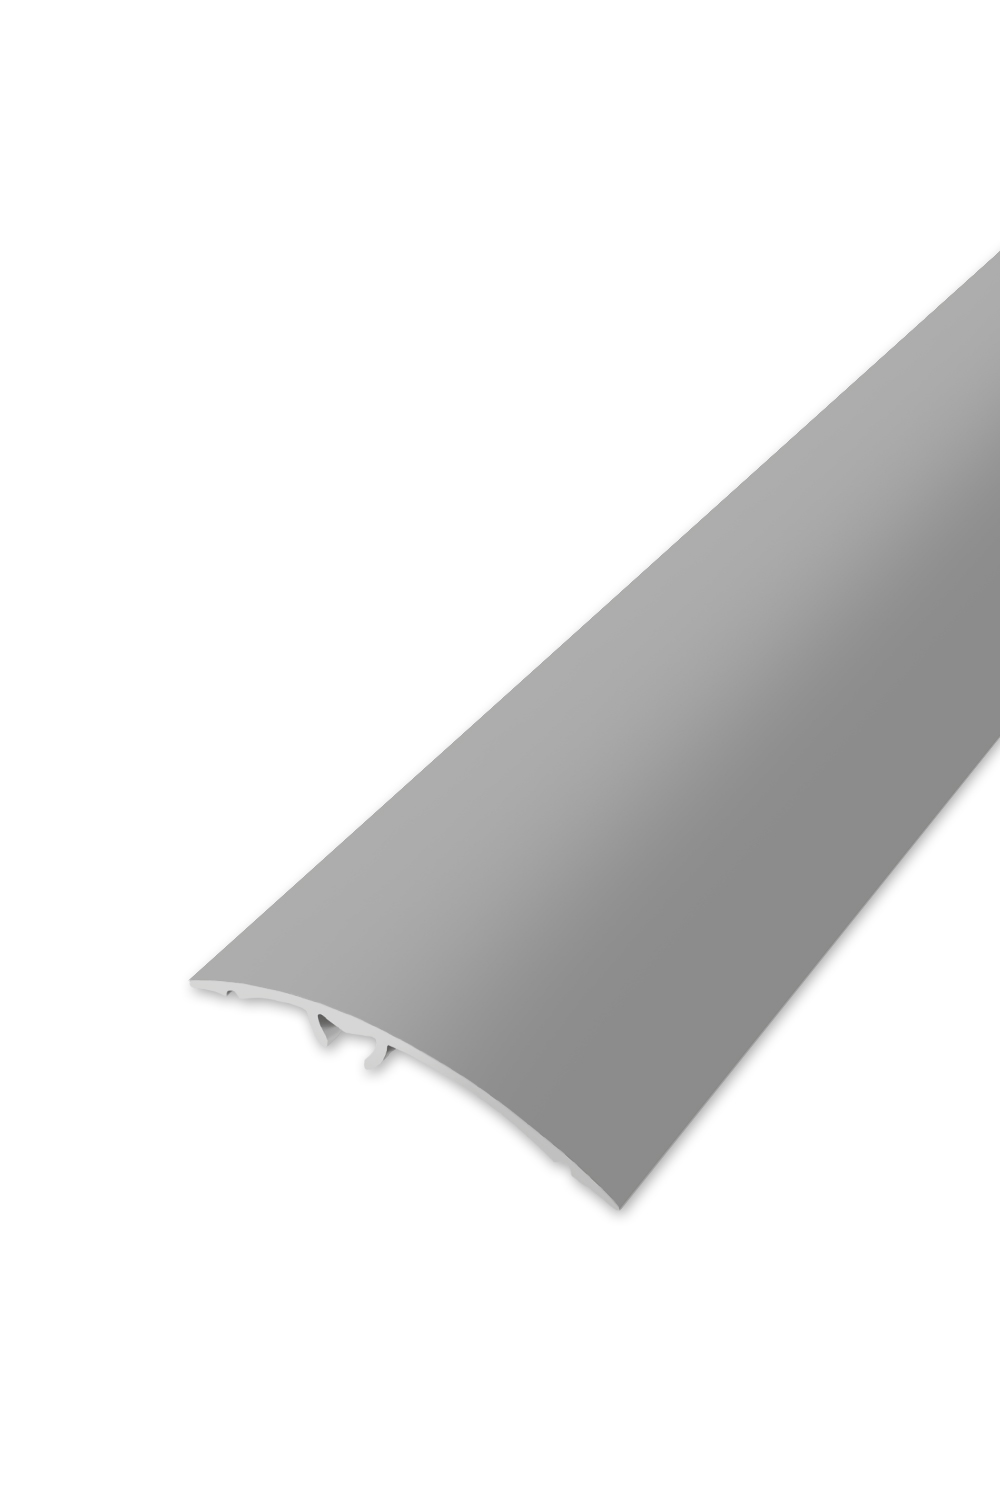 Přechodová lišta WELL 50 - Stříbrná 90 cm